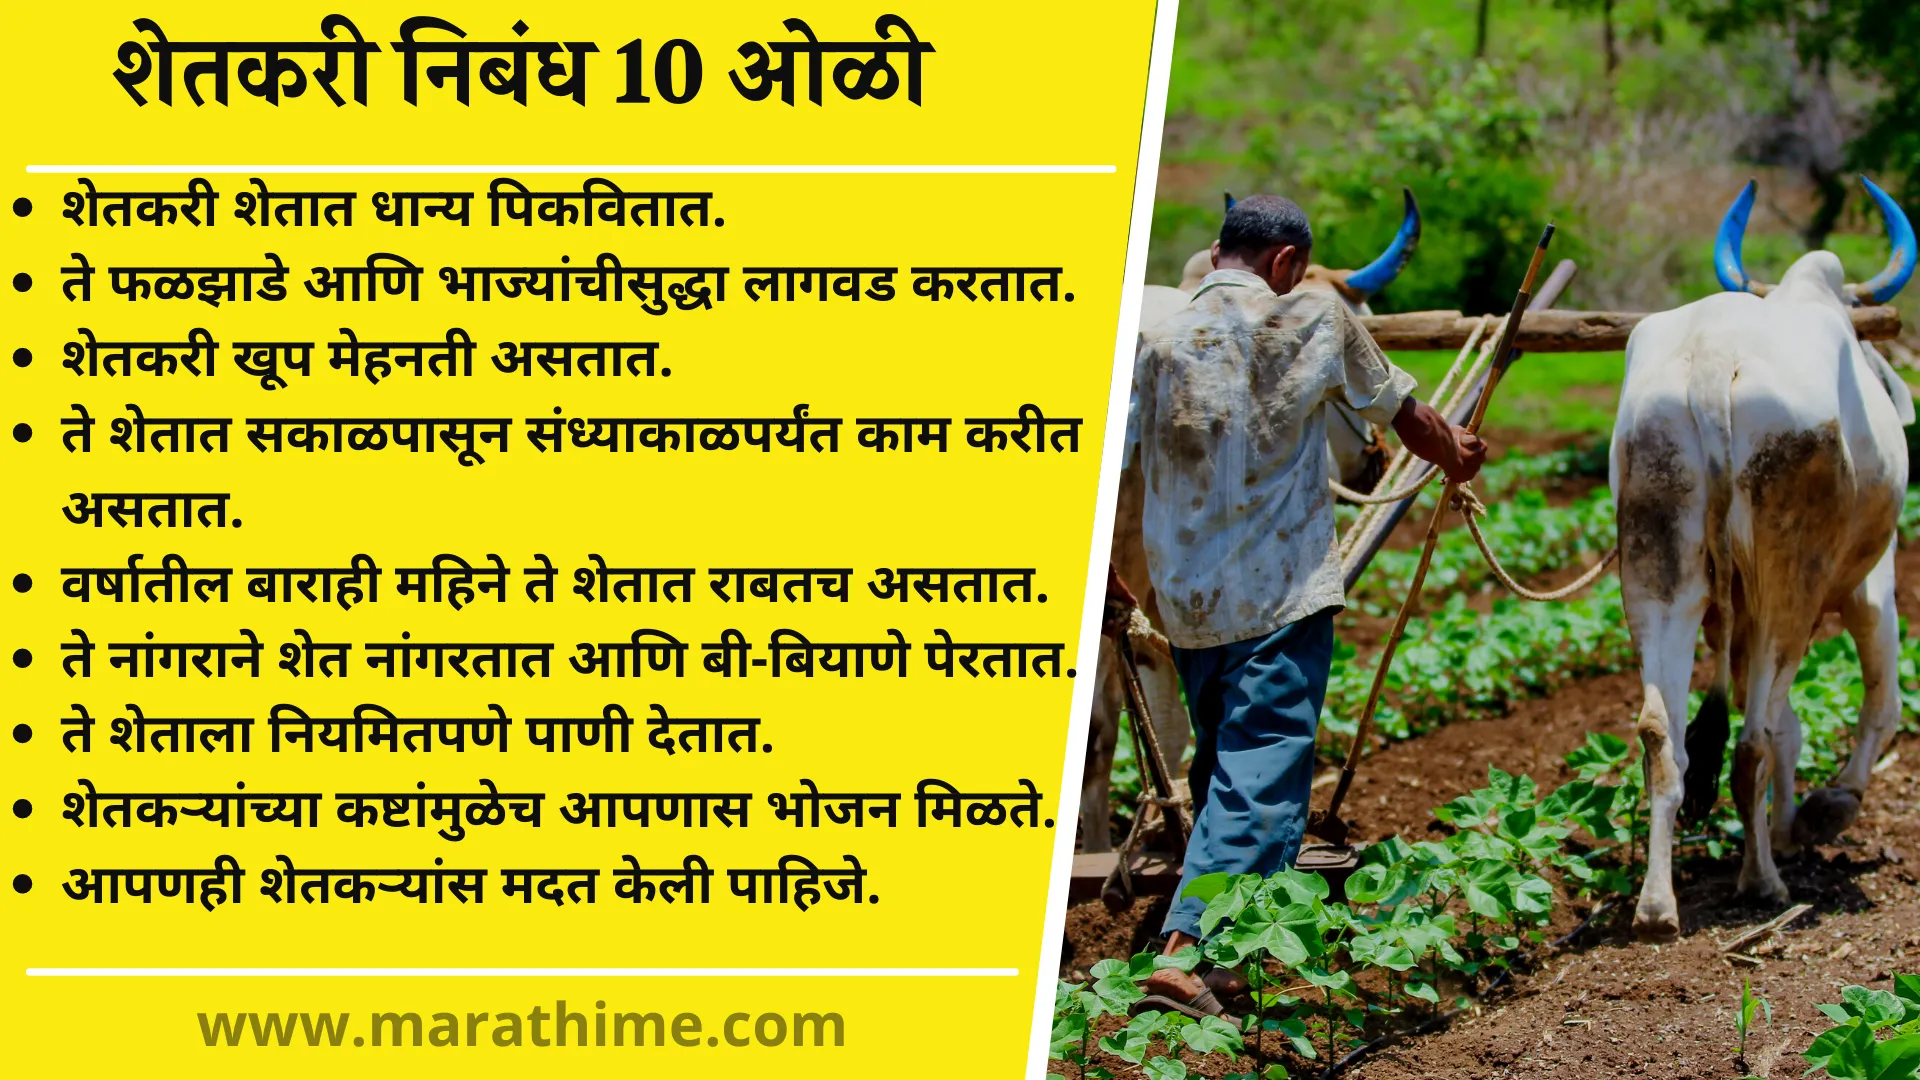 essay on my friend farmer in marathi